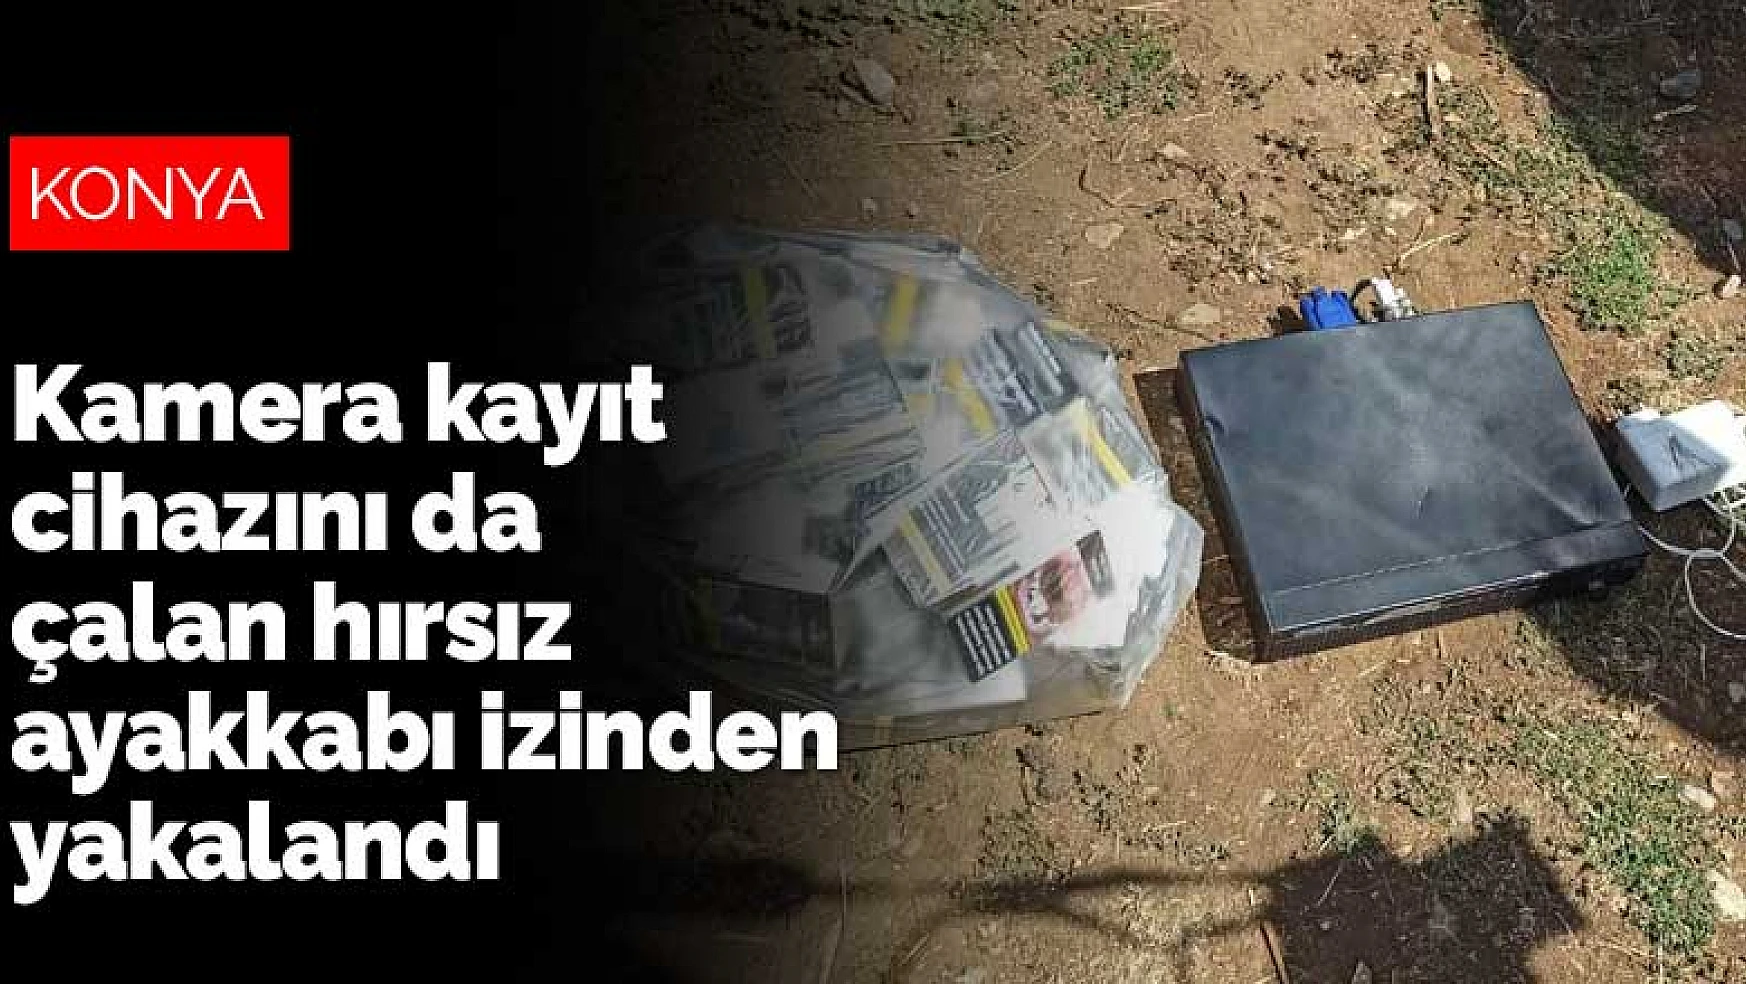 Konya'da girdiği markette kamera kayıt cihazını da çalan hırsız ayakkabı izinden yakalandı